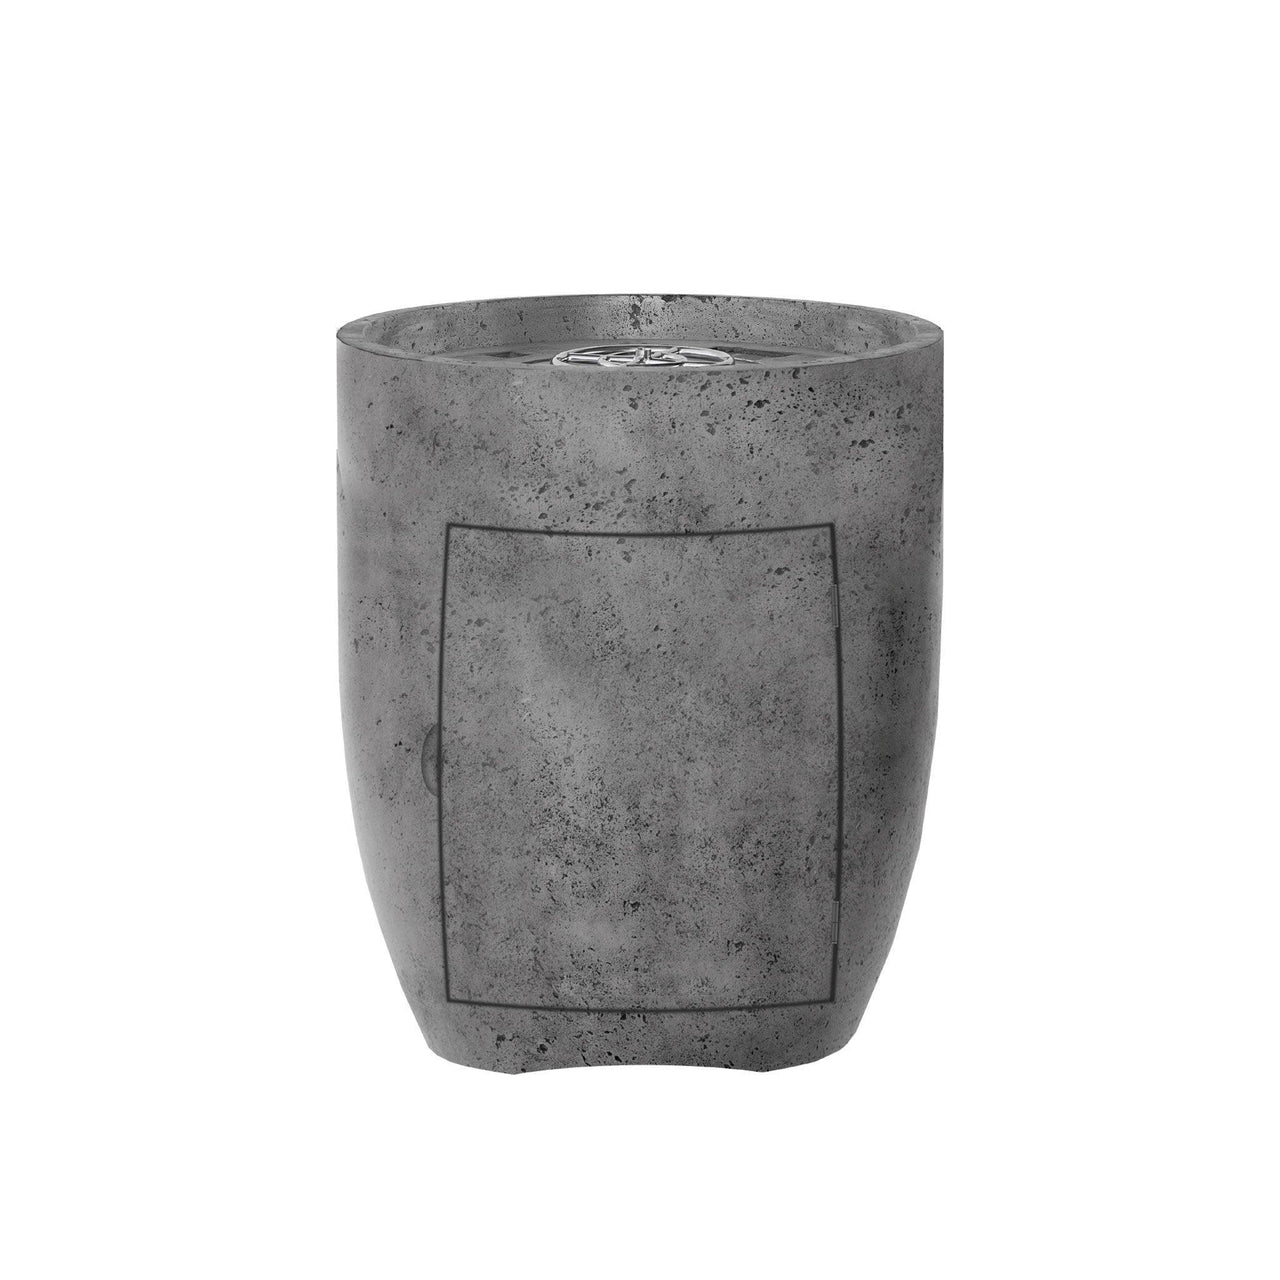 Prism Hardscapes - Pentola Series 3 Round Concrete Fire Bowl - Fire Pit Stock